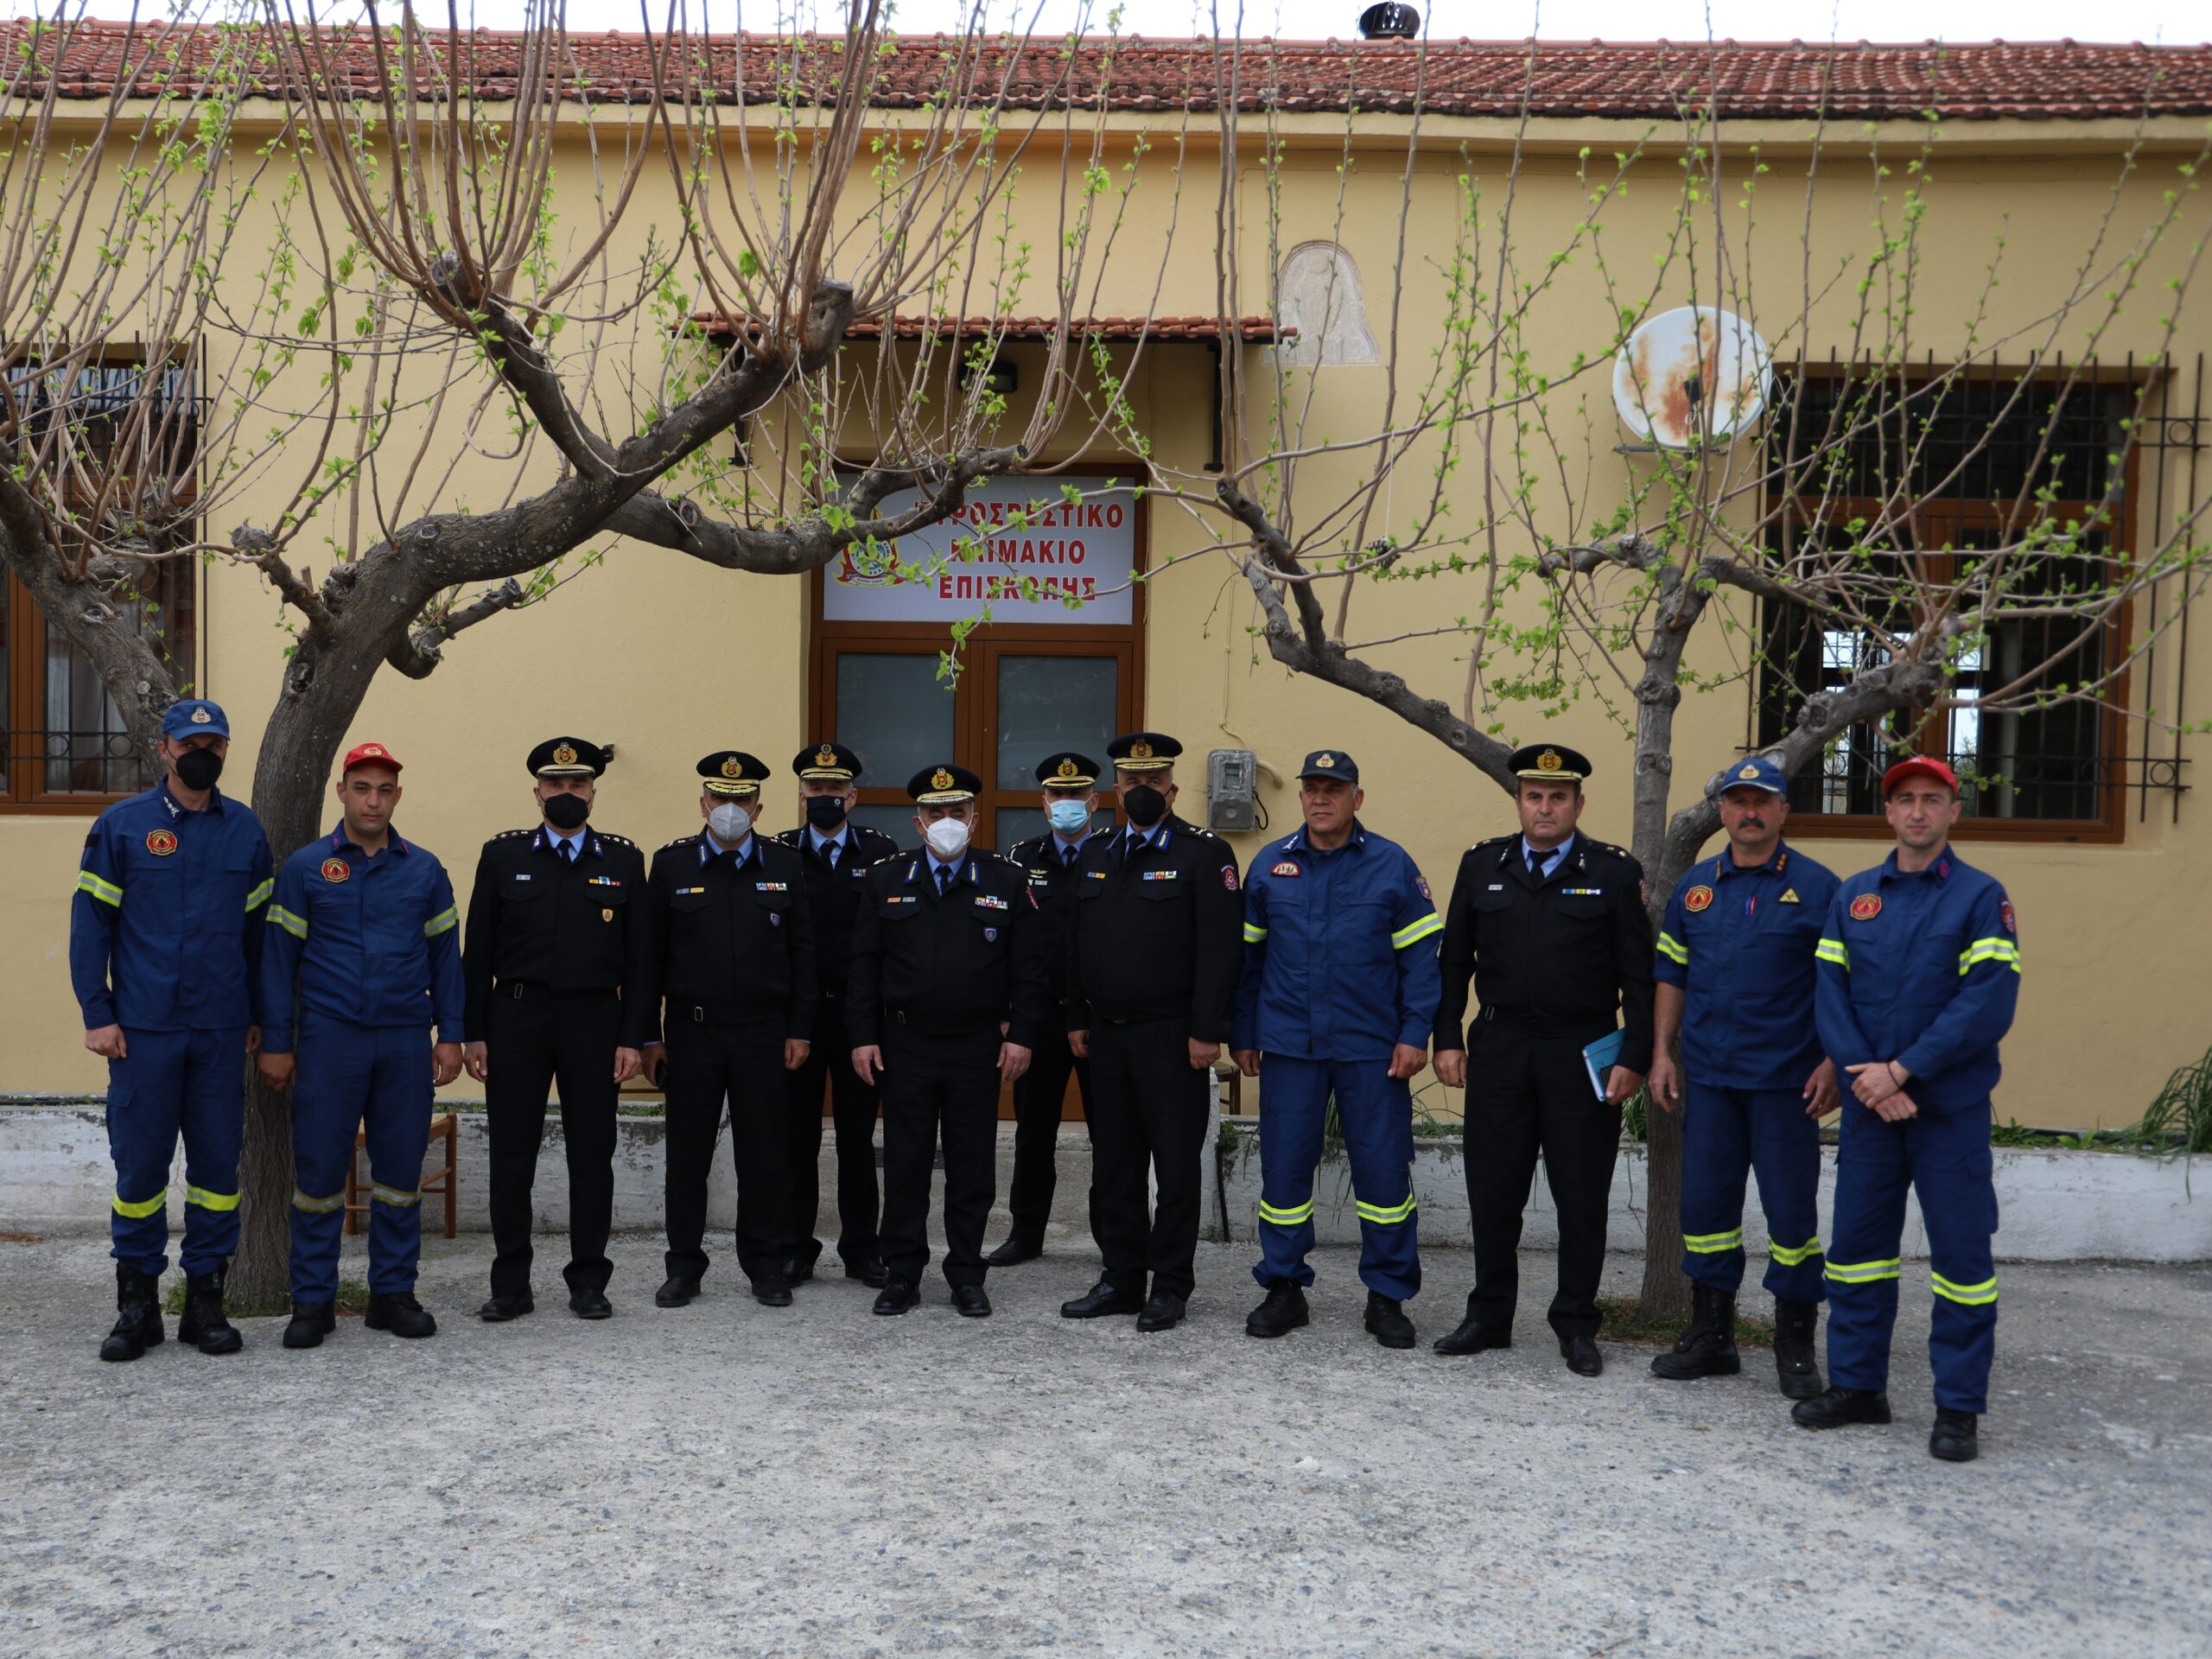 Ο Αρχηγός του Πυροσβεστικού Σώματος Αλέξιος Ράπανος επισκέφτηκε Πυροσβεστικές Υπηρεσίες και Κλιμάκια στην Κρήτη